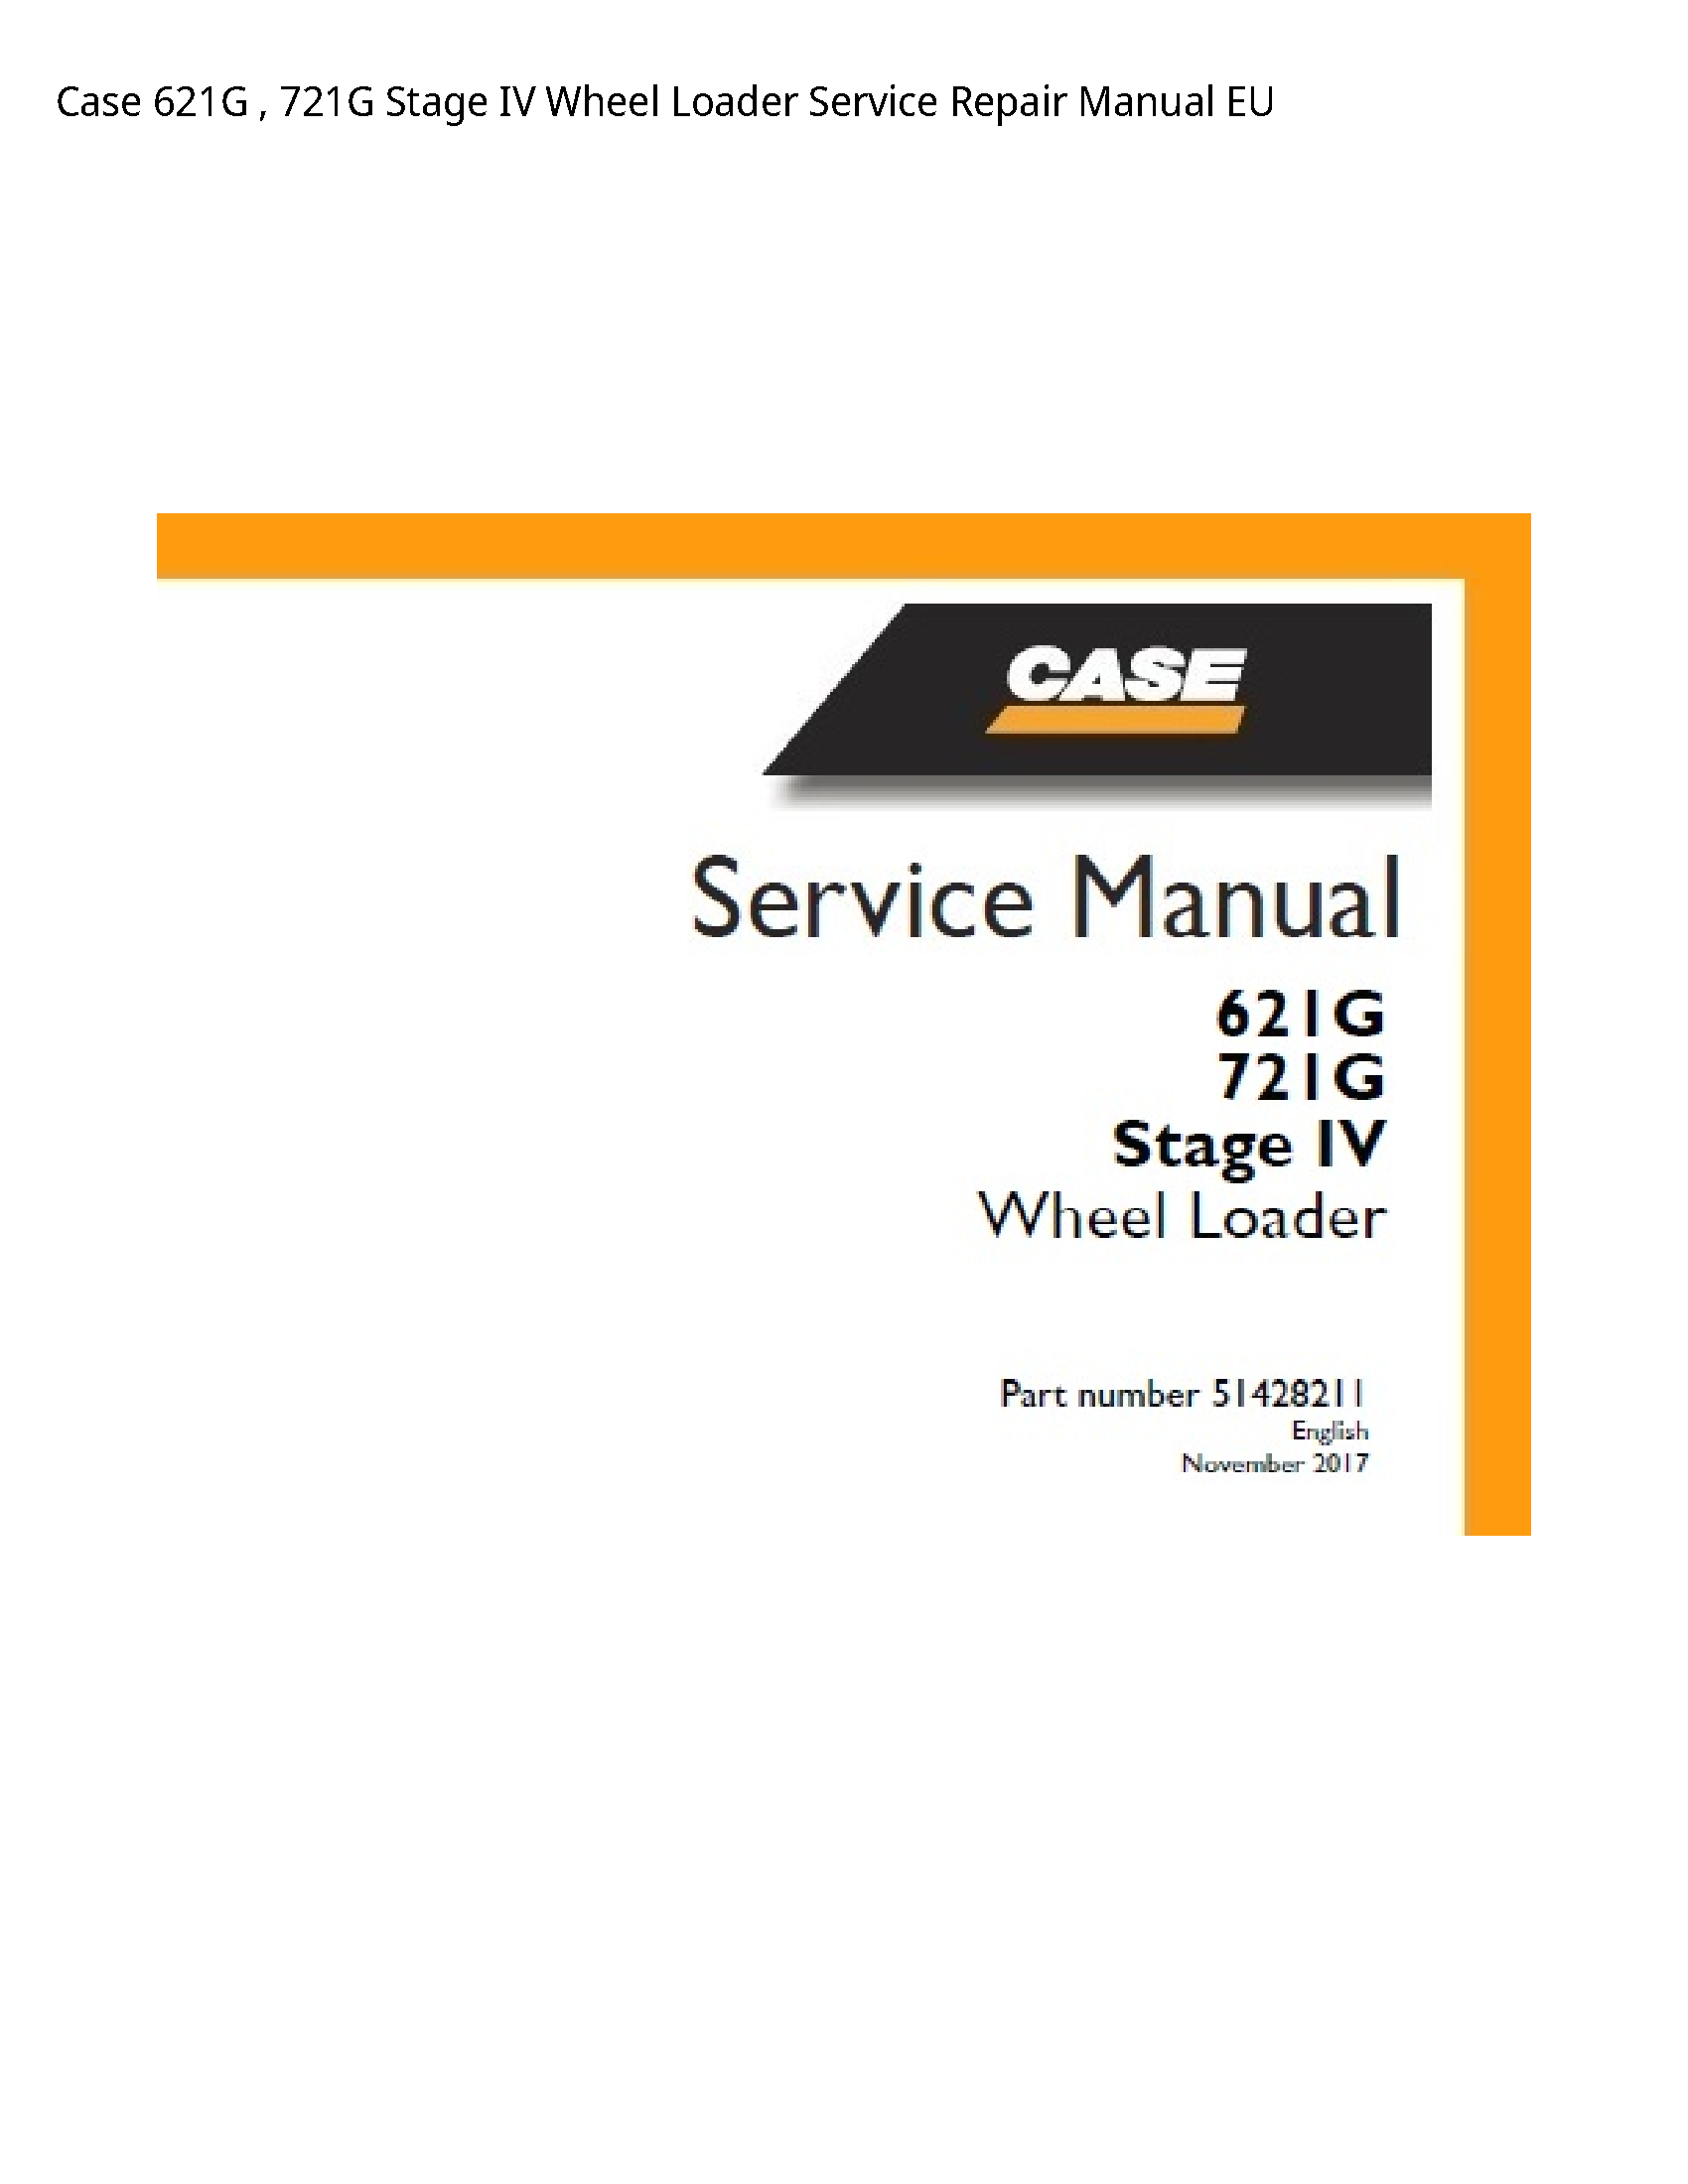 Case/Case IH 621G Stage IV Wheel Loader manual